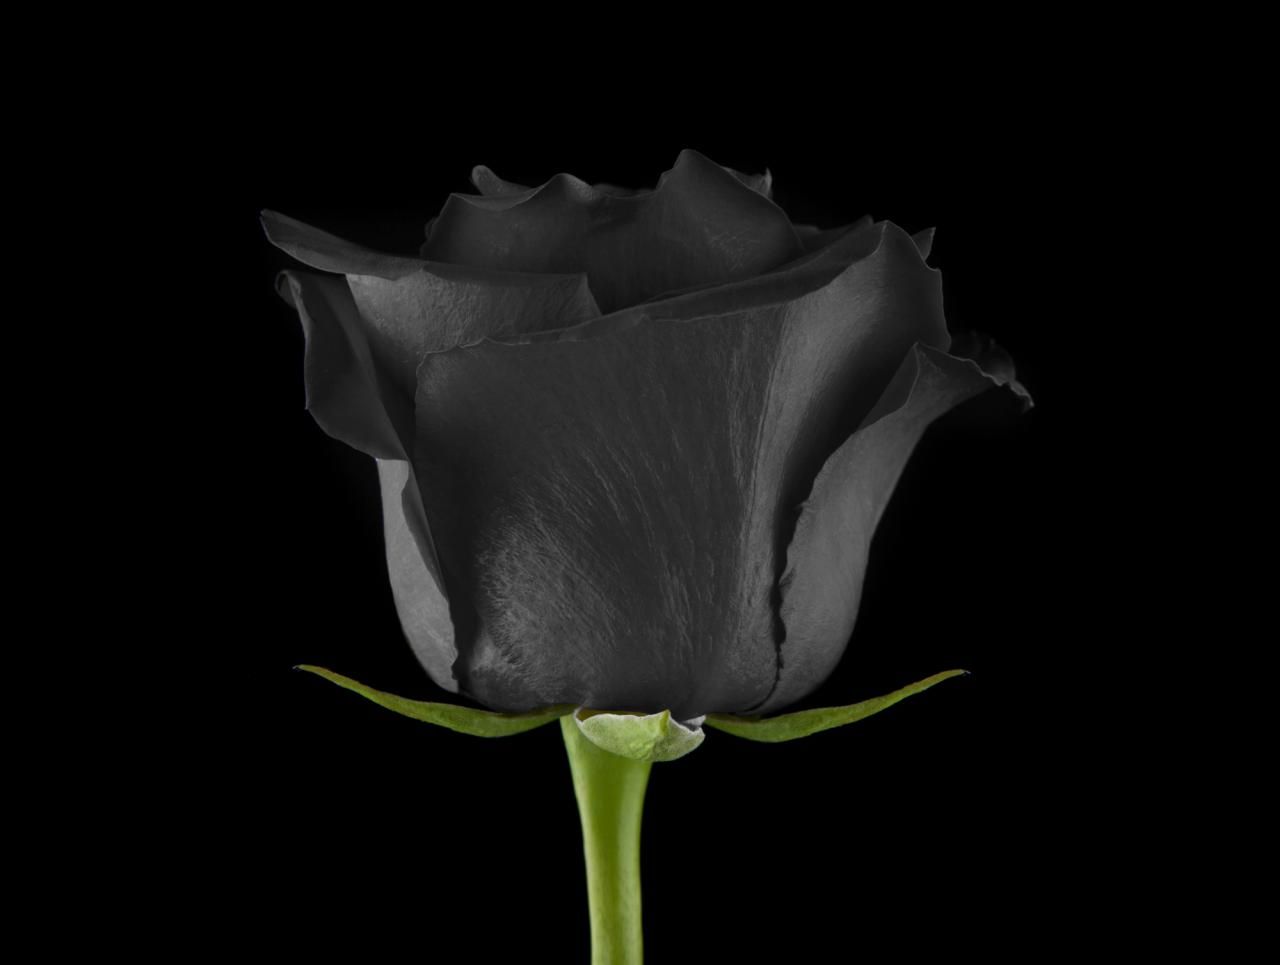 少し怖い意味の花言葉を持つ『黒バラ』それでもお勧めな希少品種